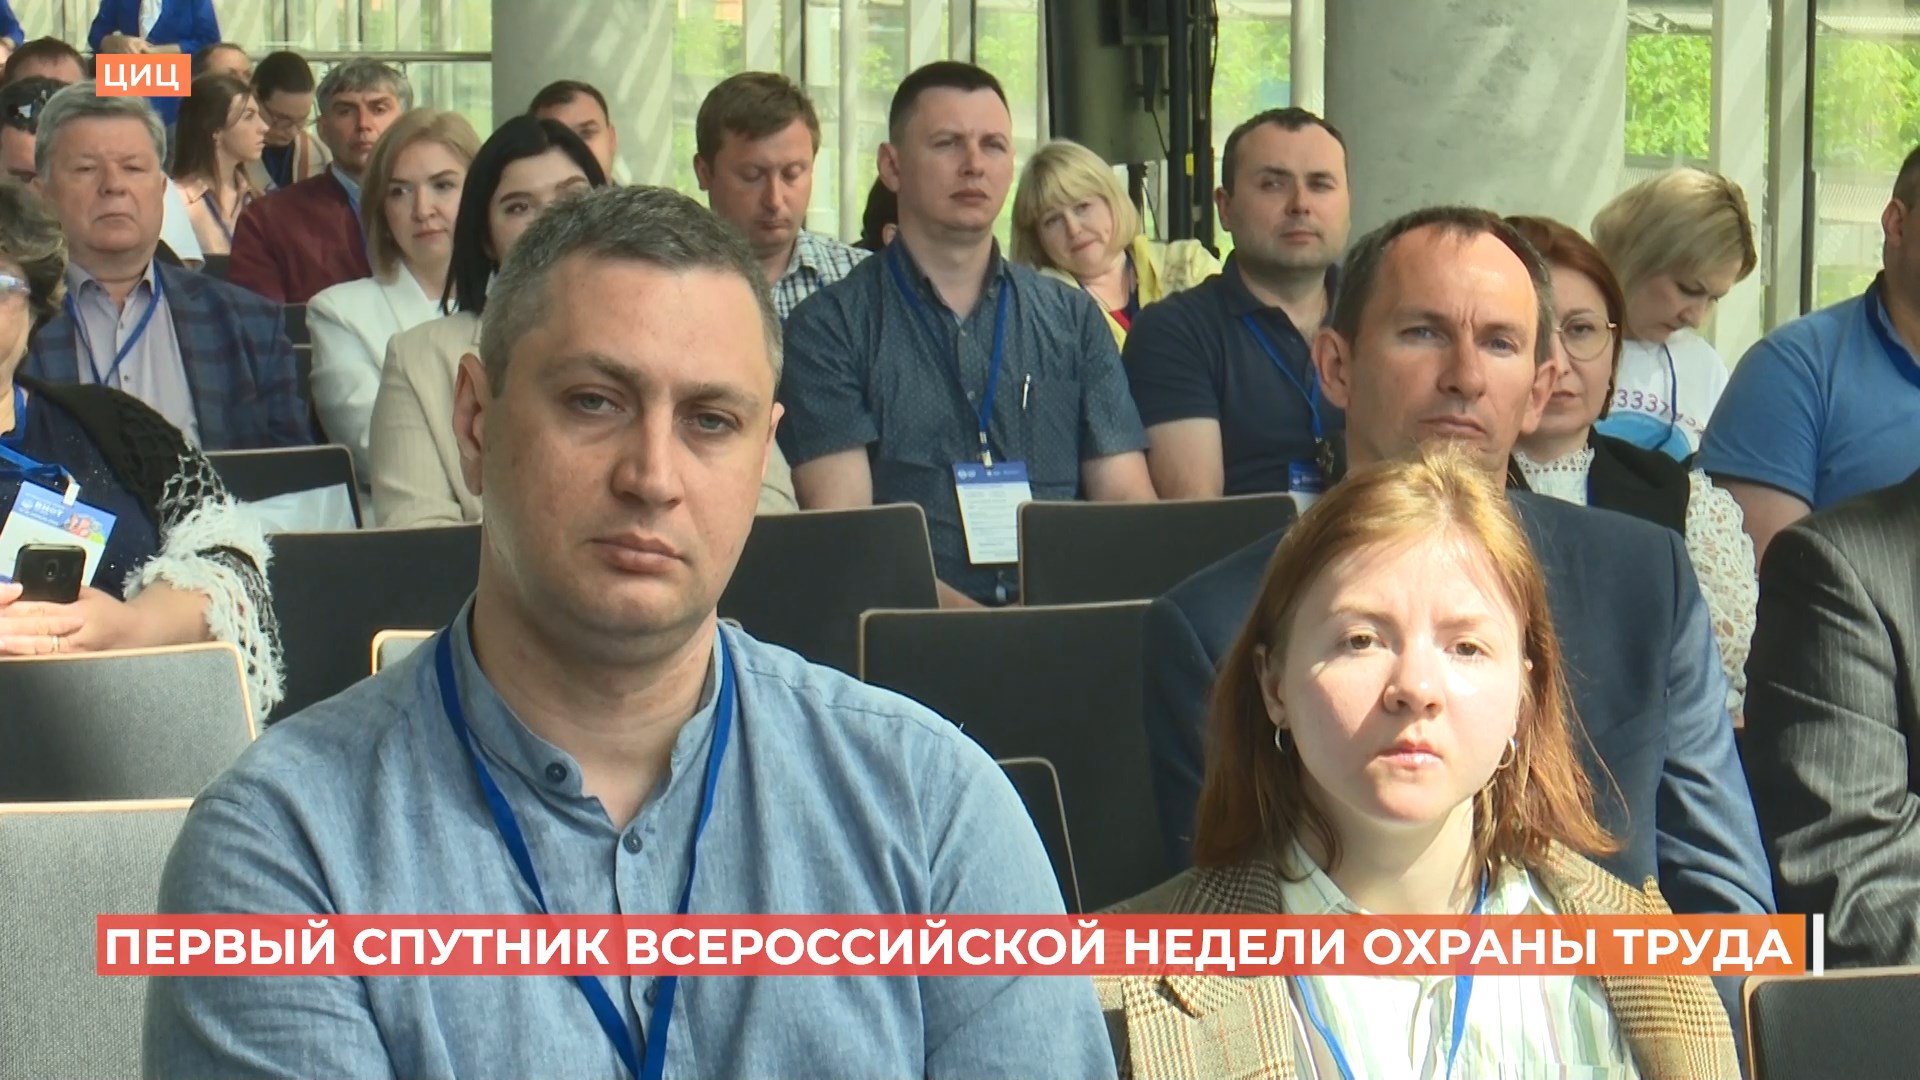 Первое в стране мероприятие-спутник Всероссийской недели охраны труда провели в Ростове